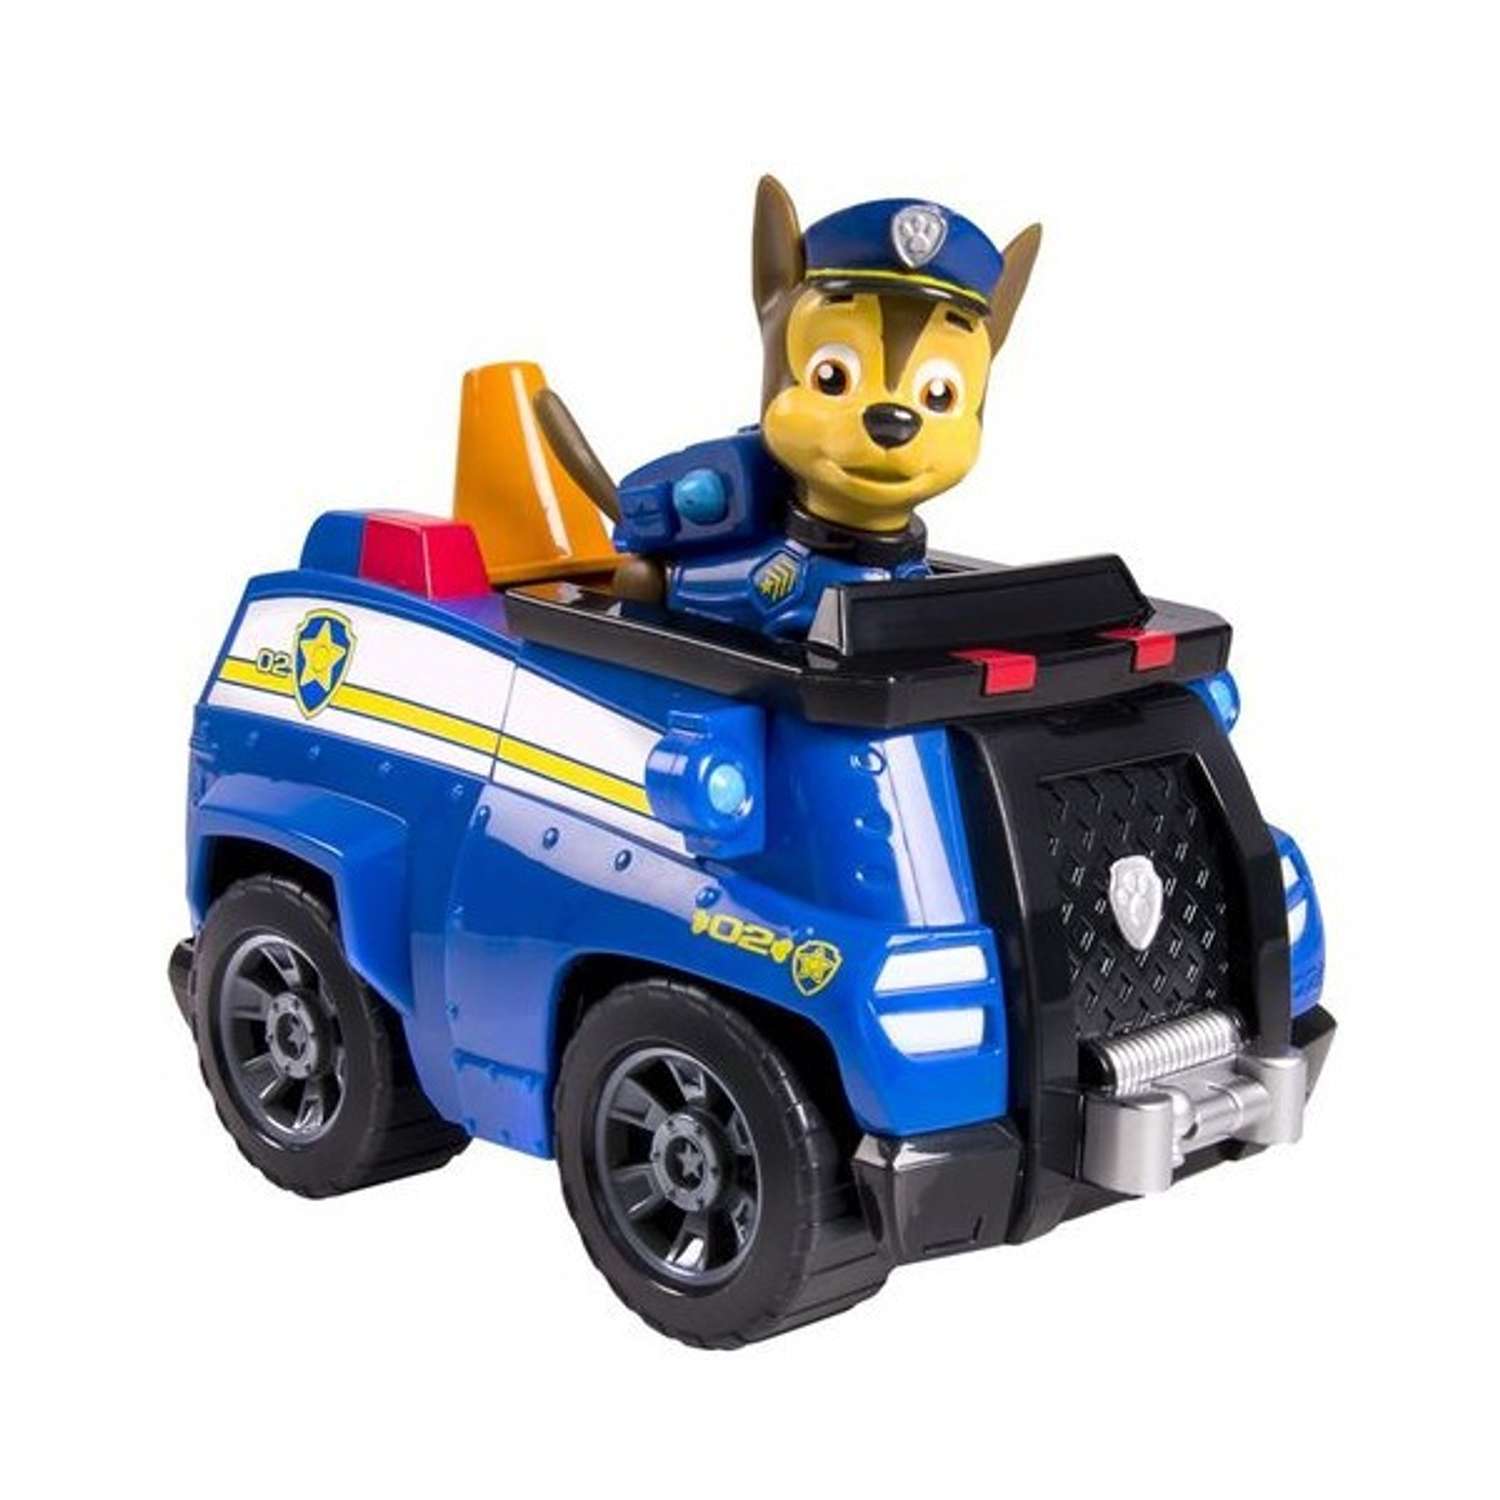 Машинка спасателя Щенячий патруль и щенок в ассортименте - фото 1